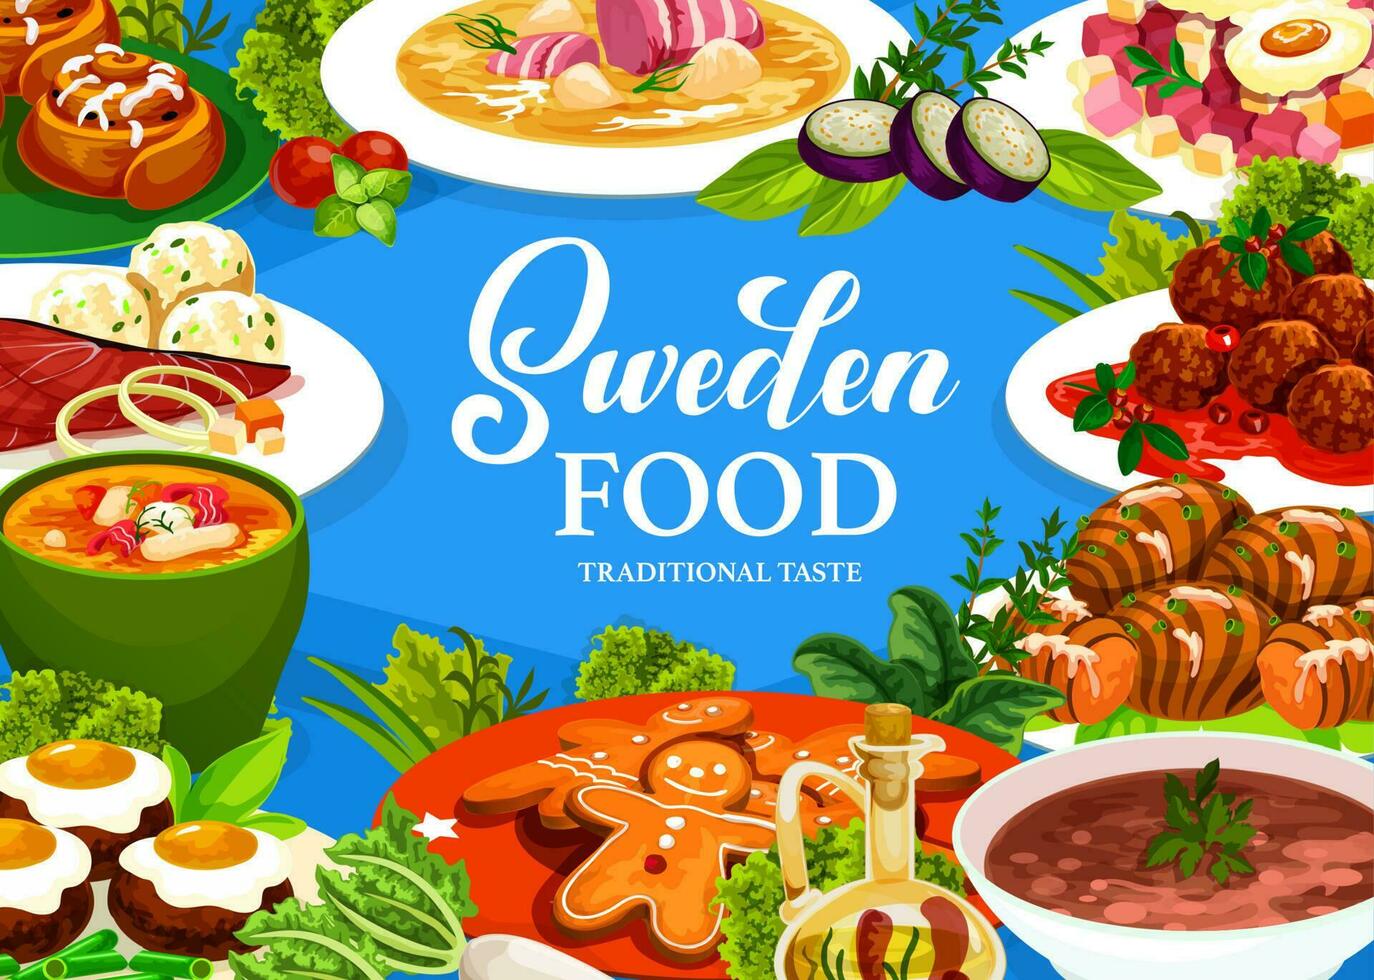 Suécia Comida vetor poster com sueco refeições.